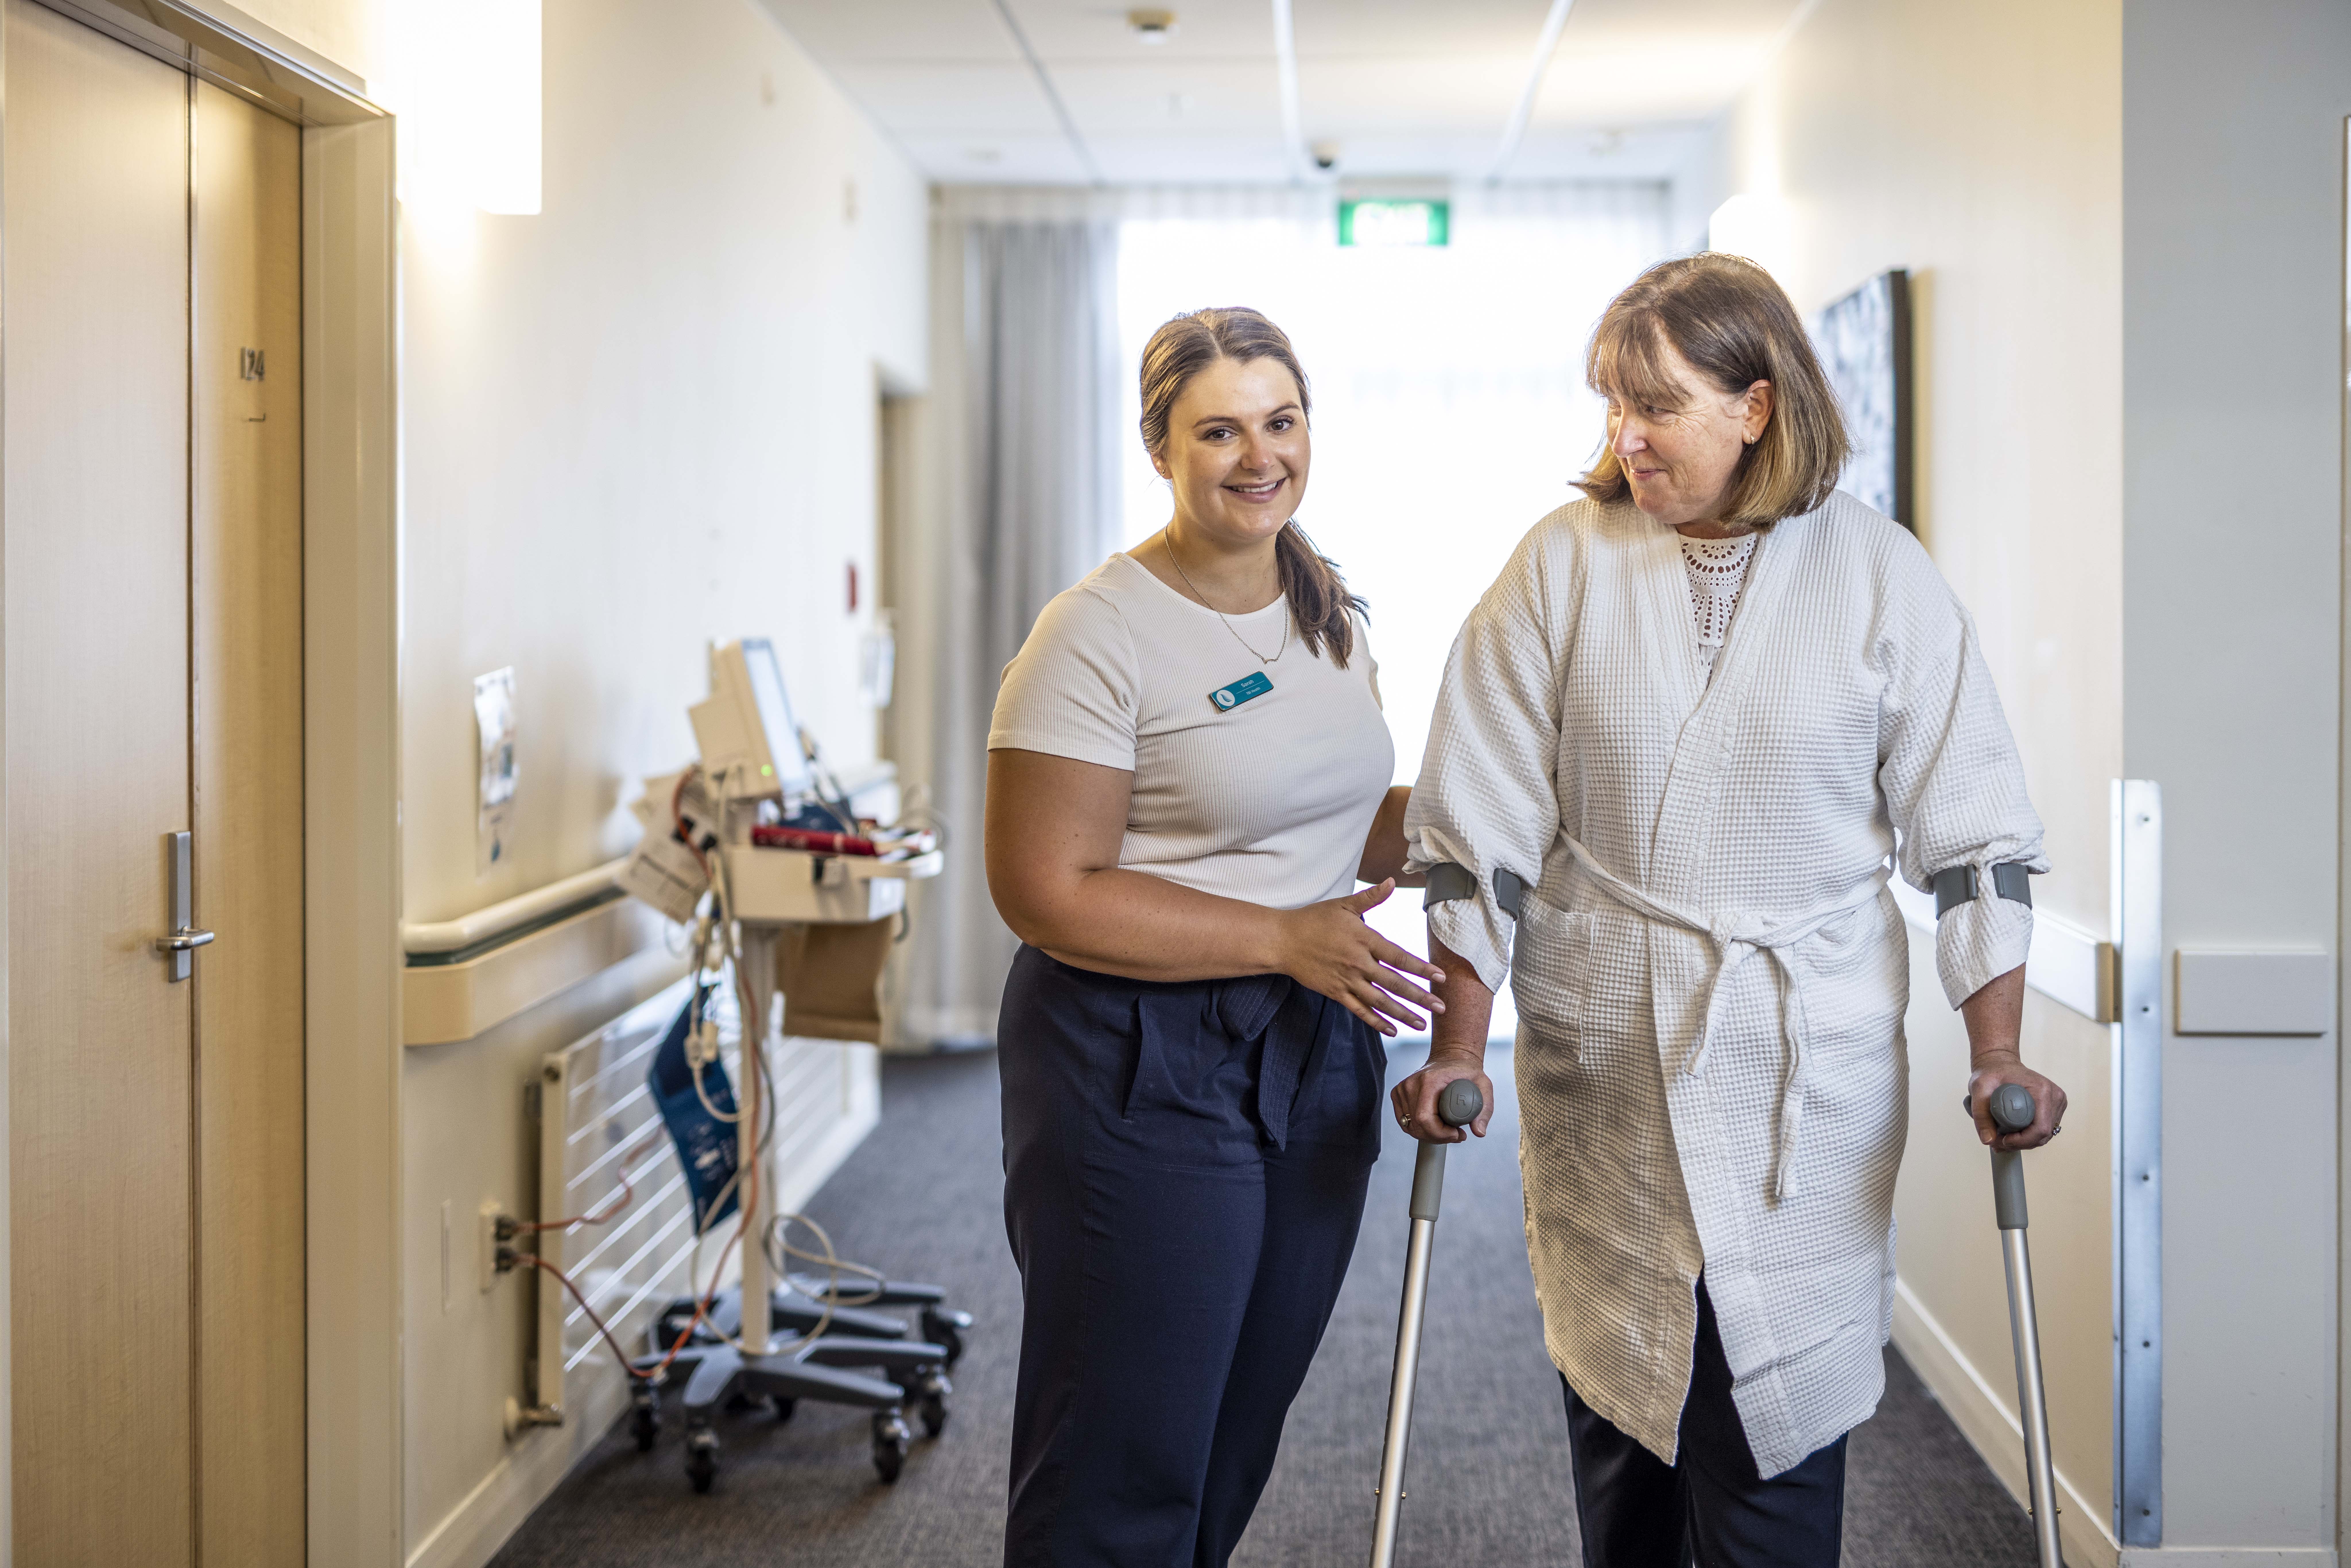 A nurse helps a patient walk